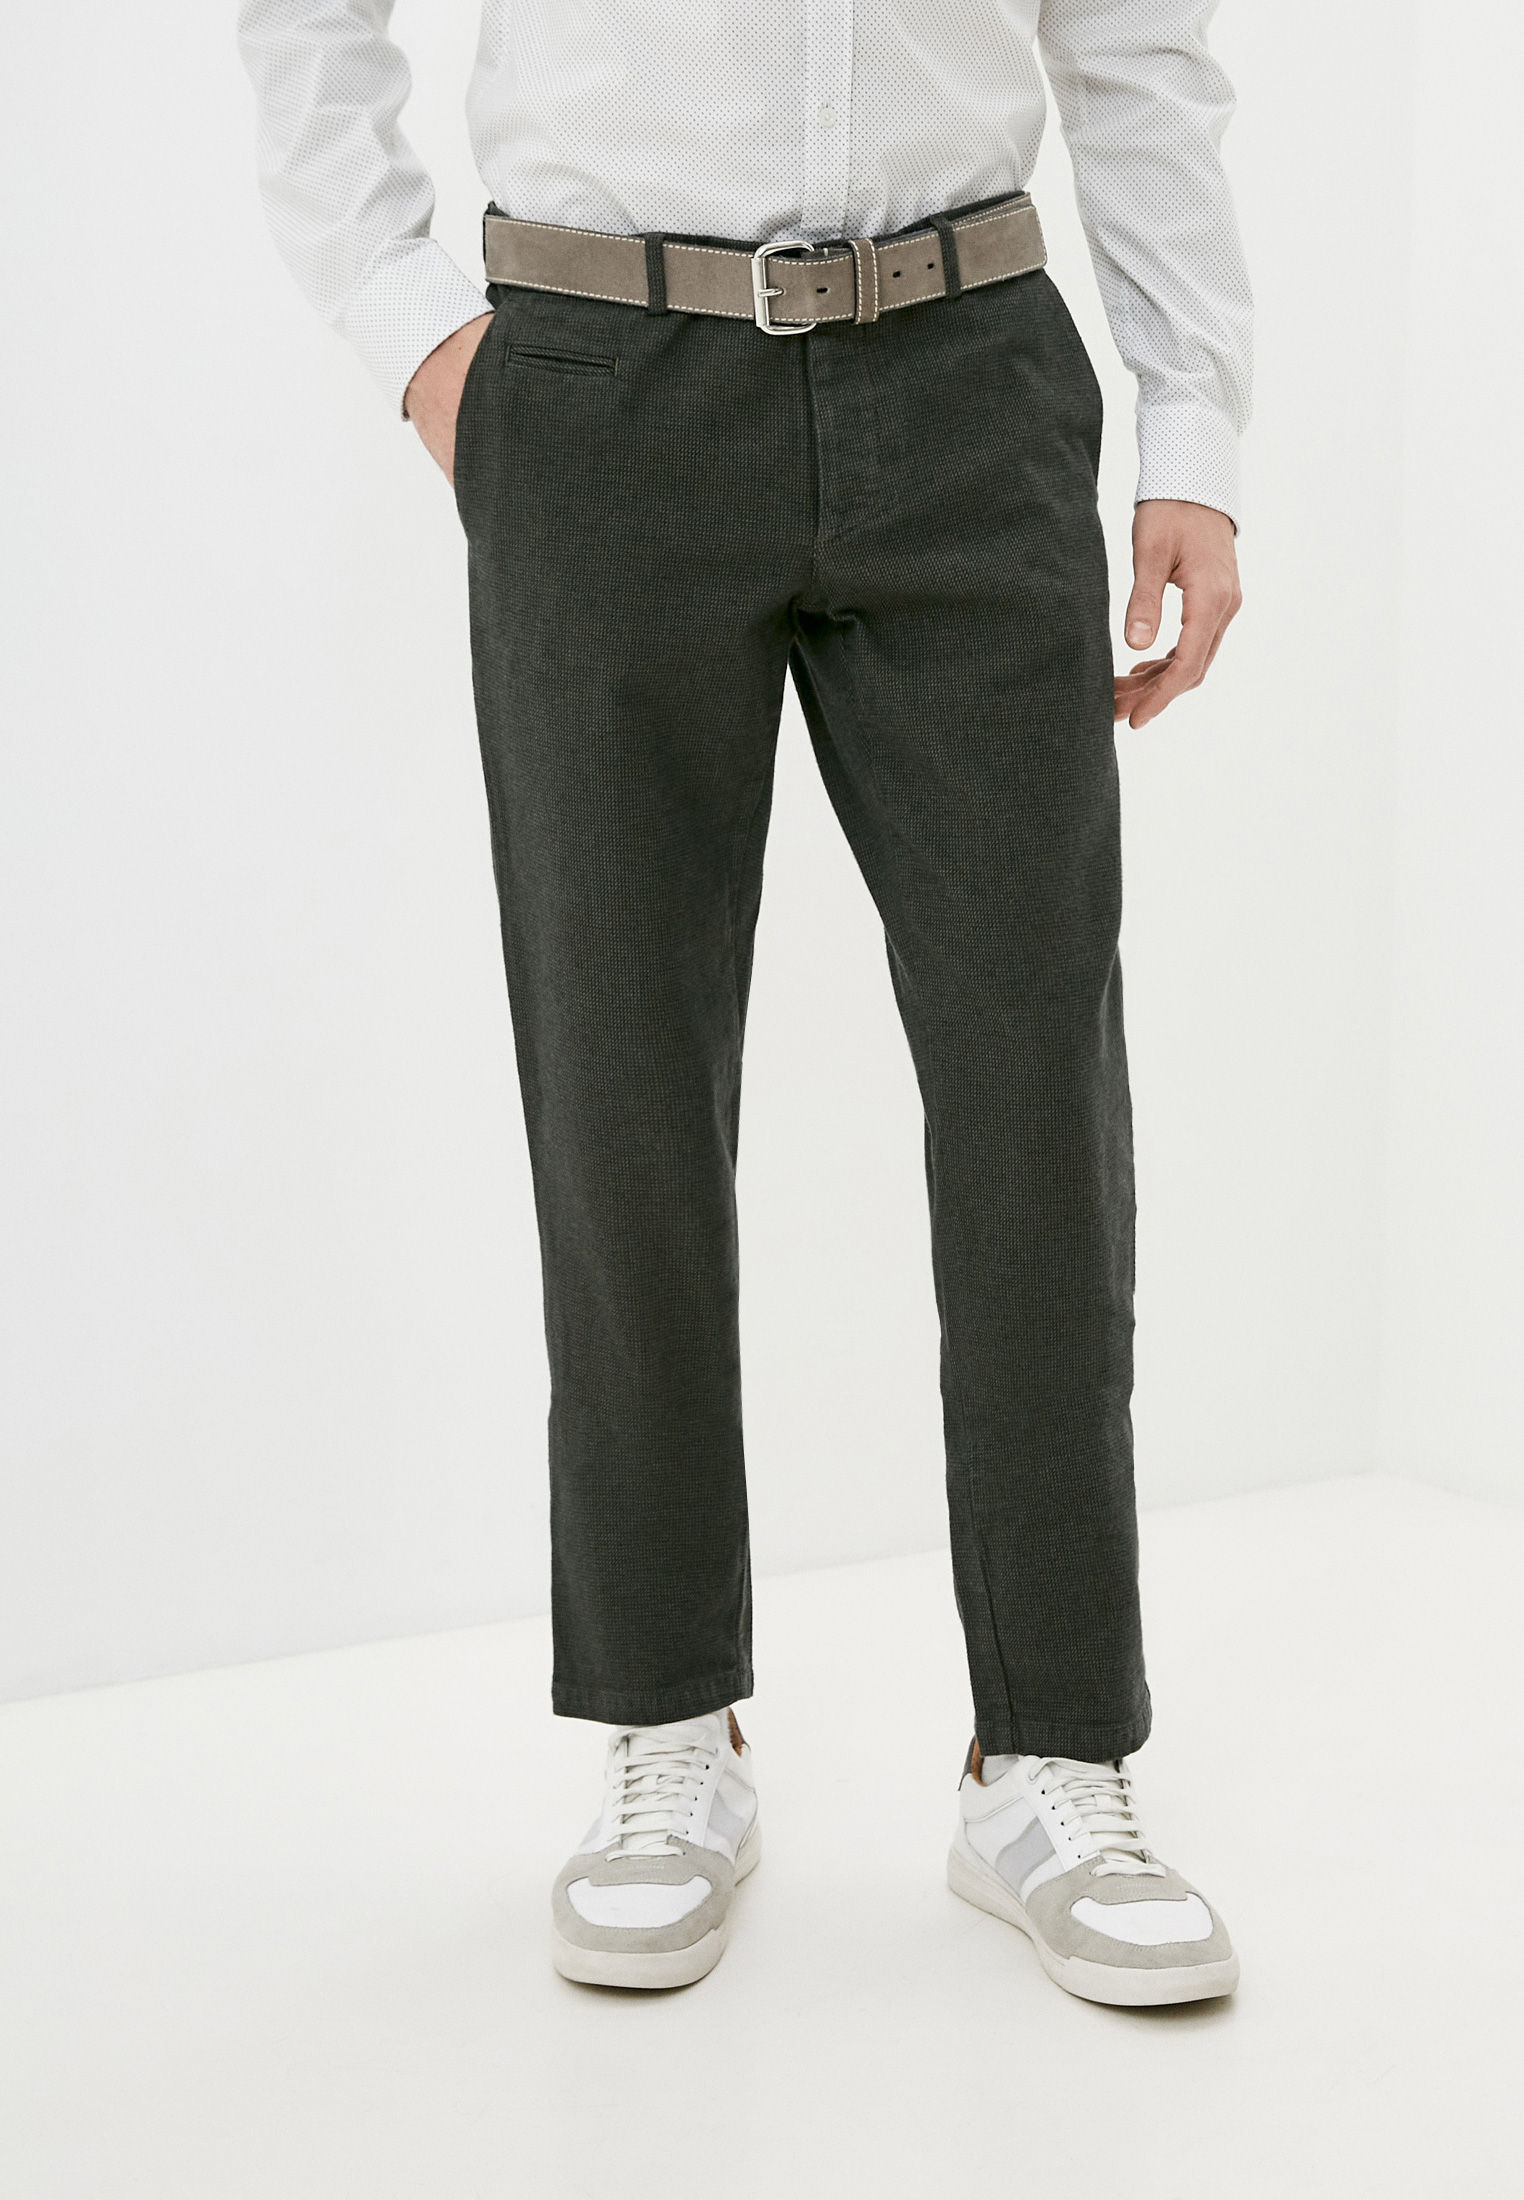 Мужские повседневные брюки Trussardi (Труссарди) 52P00019-1T003200-H-001: изображение 1